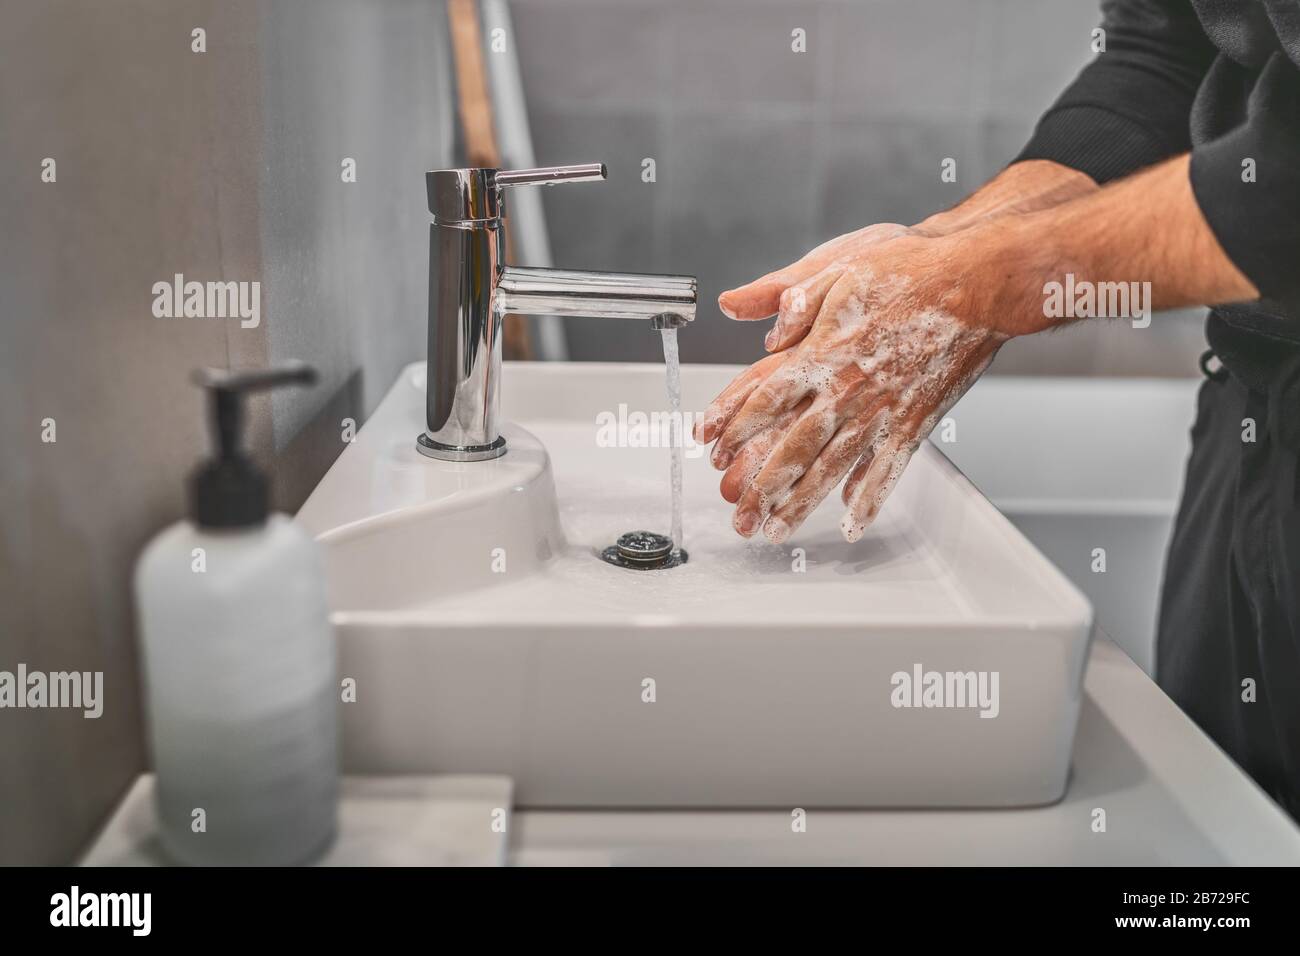 Se laver les mains avec du savon et de l'eau chaude à la maison lavabo homme nettoyage des mains hygiène pour la prévention de l'éclosion de coronavirus. Protection contre la pandémie du virus Corona en se lavant fréquemment les mains. Banque D'Images